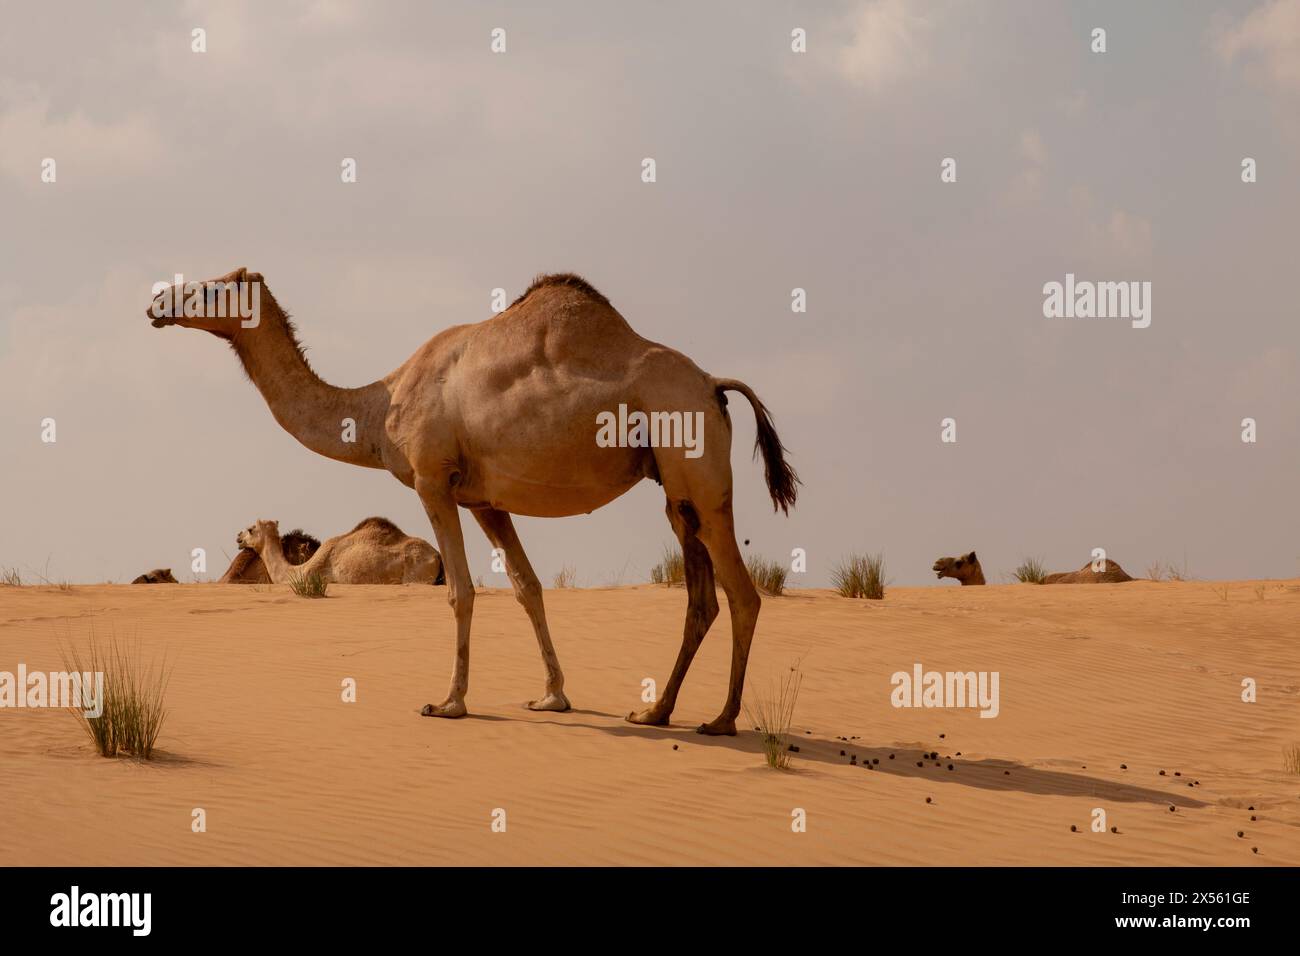 Grazing camel in the desert Stock Photo